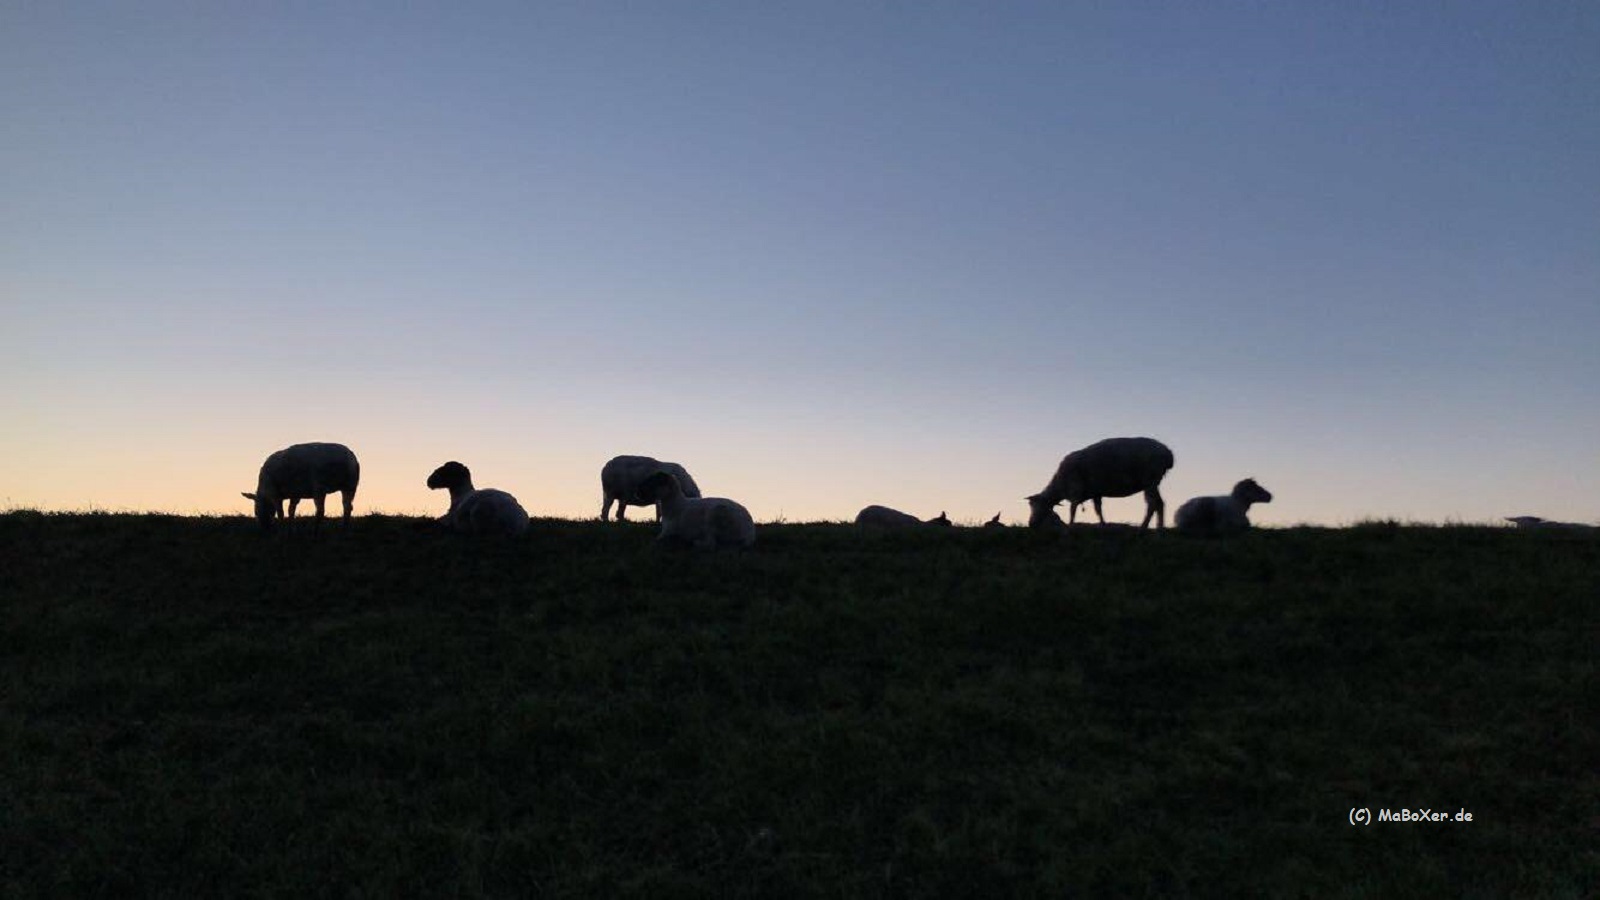 Schafe in York am Elbdeich (C) MaBoXer.de